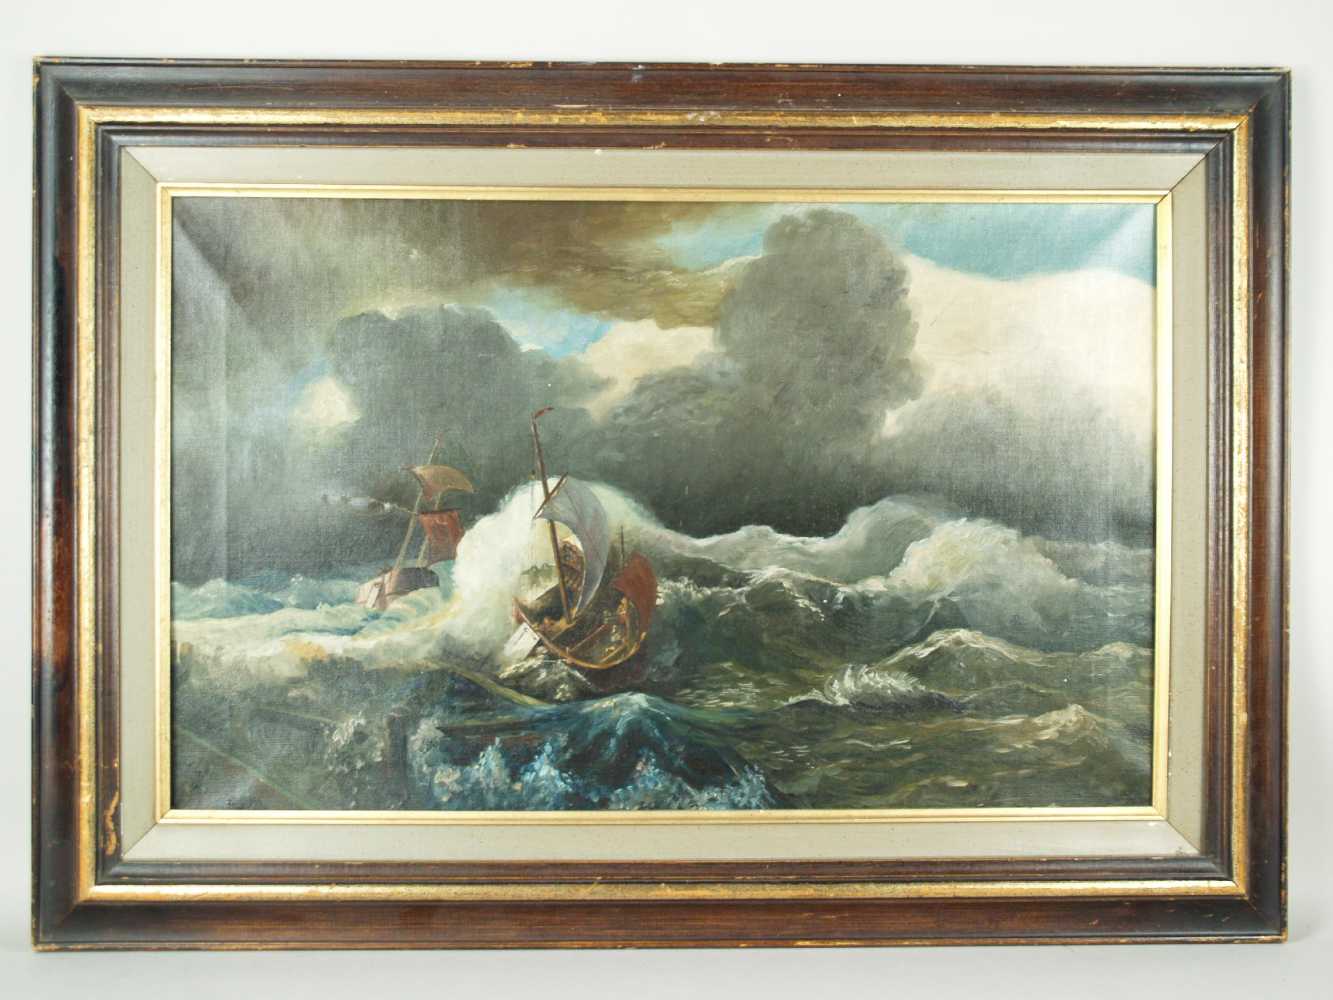 Stemmer,E.- Schiffe in stürmischer See,Öl auf Leinwand,links unten signiert und datiert 1915,Lwd